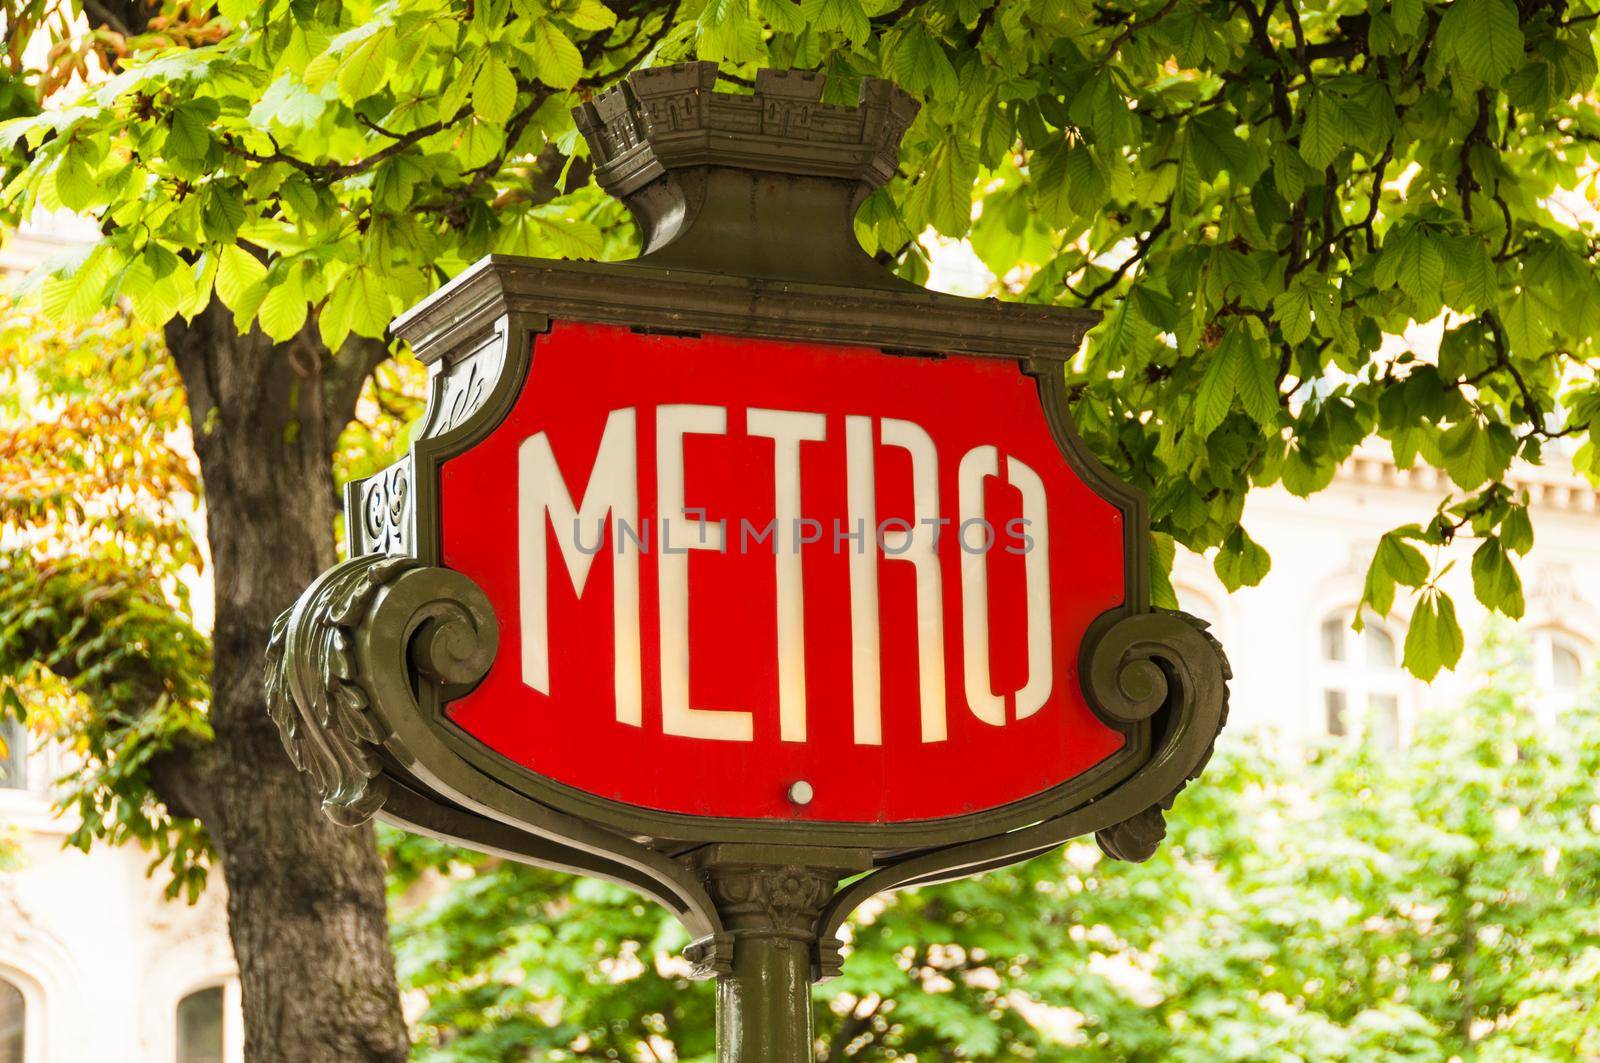 Vintage Parisian metro sign in Paris, France by dutourdumonde